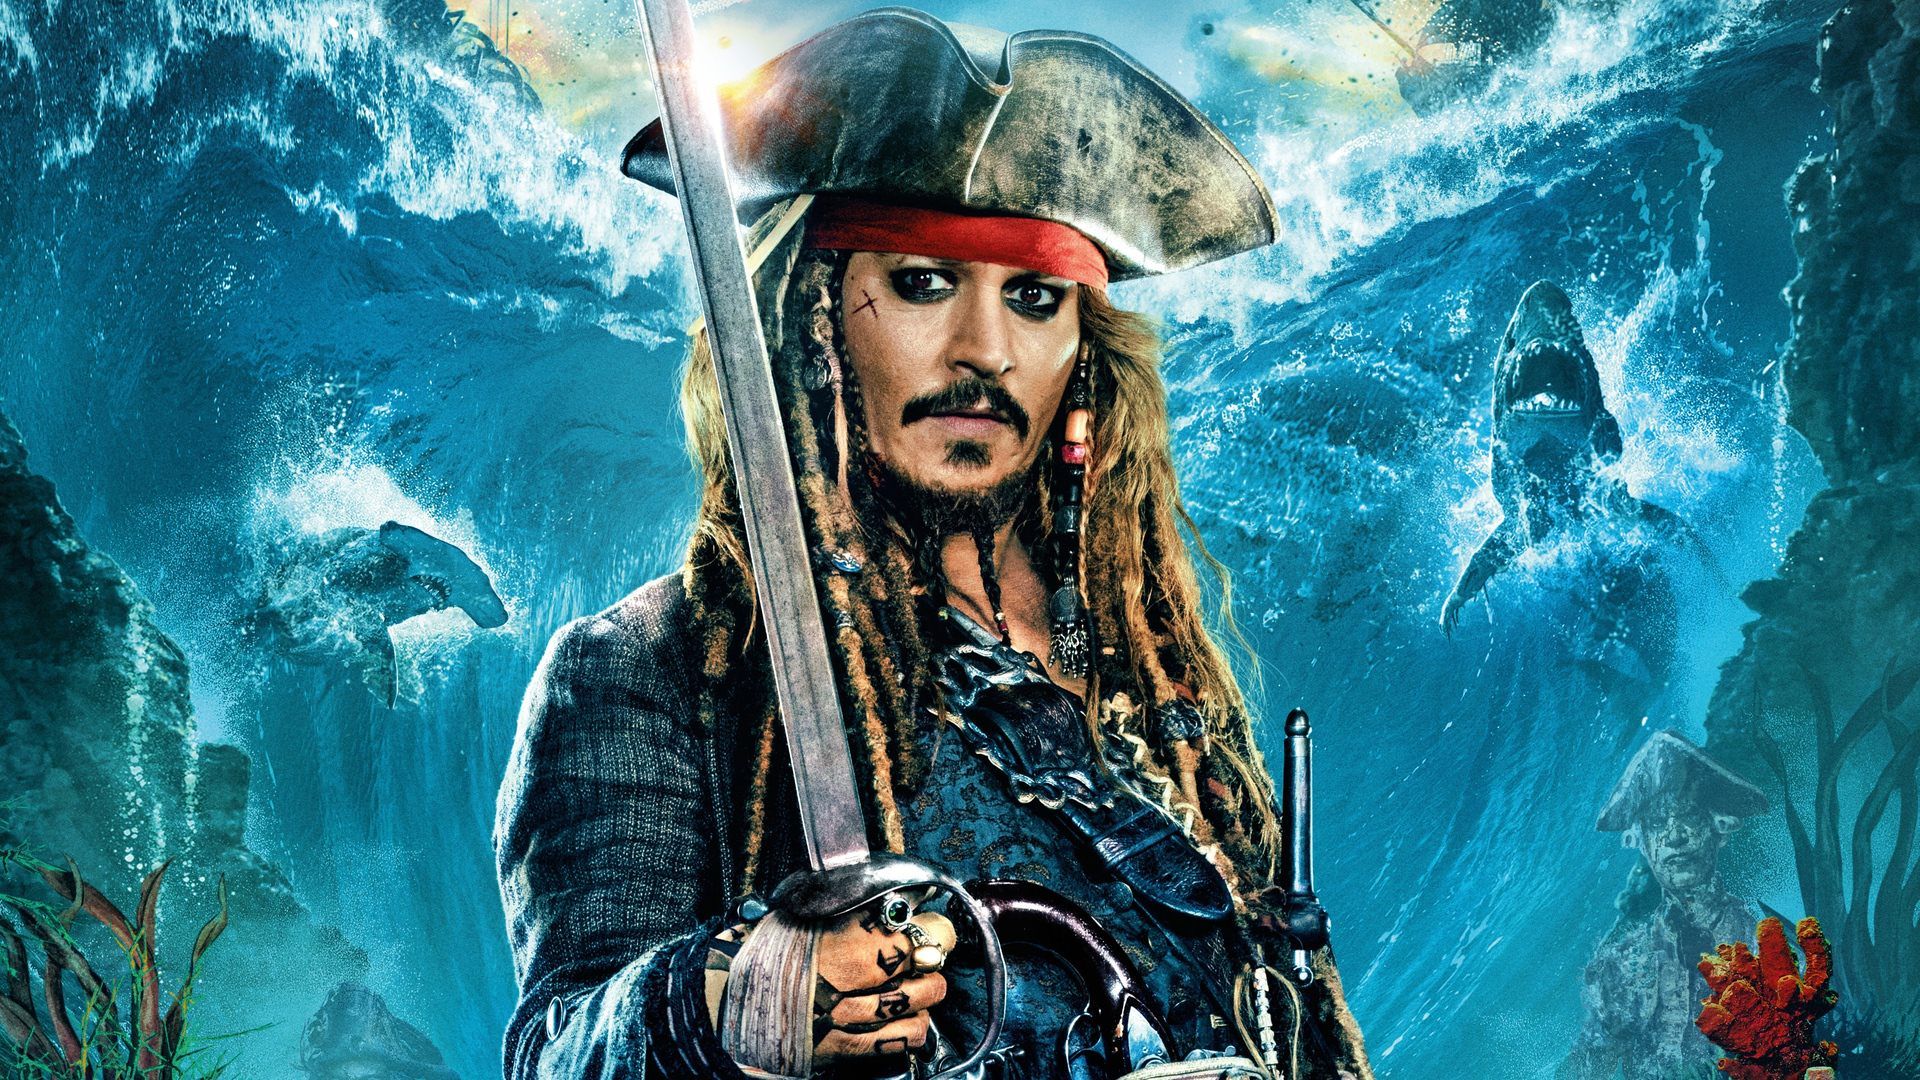 Johnny Depp no volverá a ser Jack Sparrow en 'Piratas del Caribe